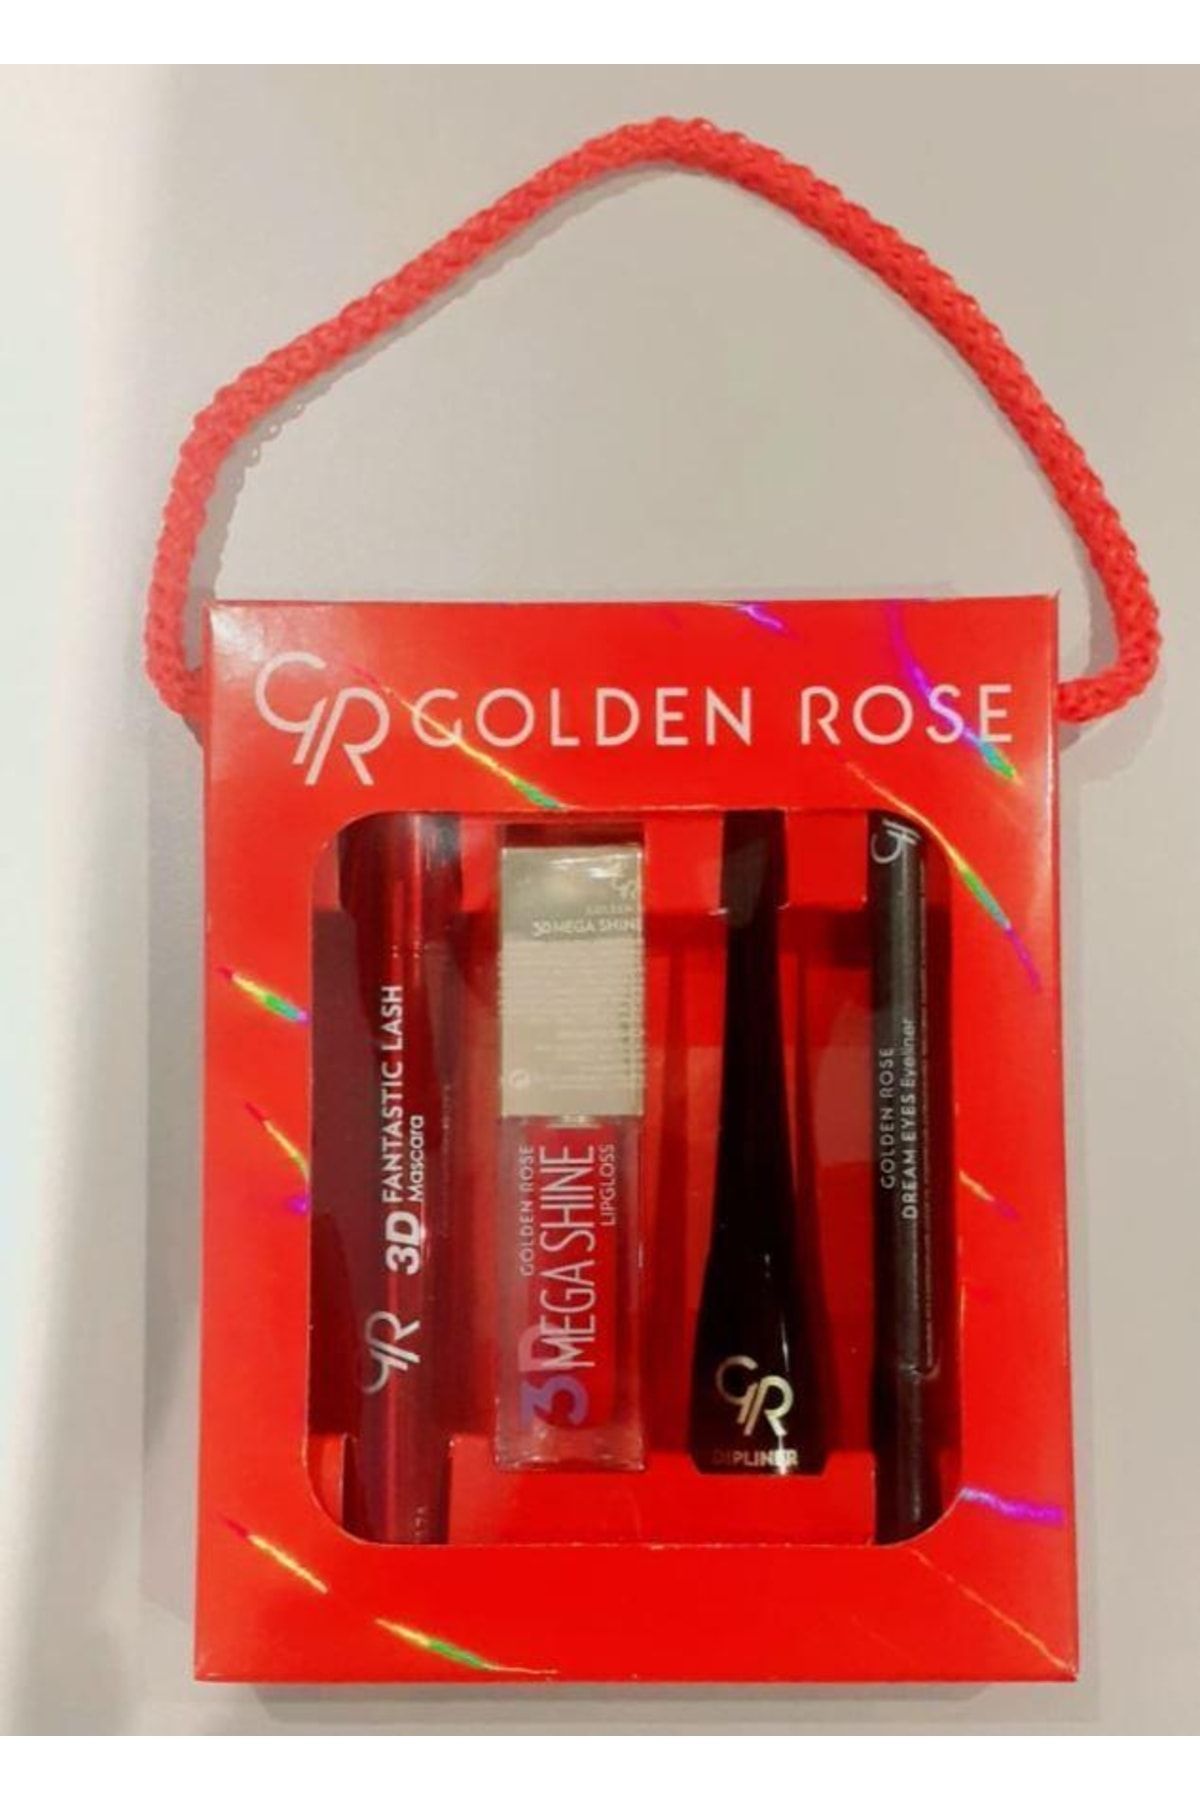 Golden Rose Sevgililer Günü Özel Karma Kofre Set 1(maskara-lipgloss-dipliner-eyeliner)